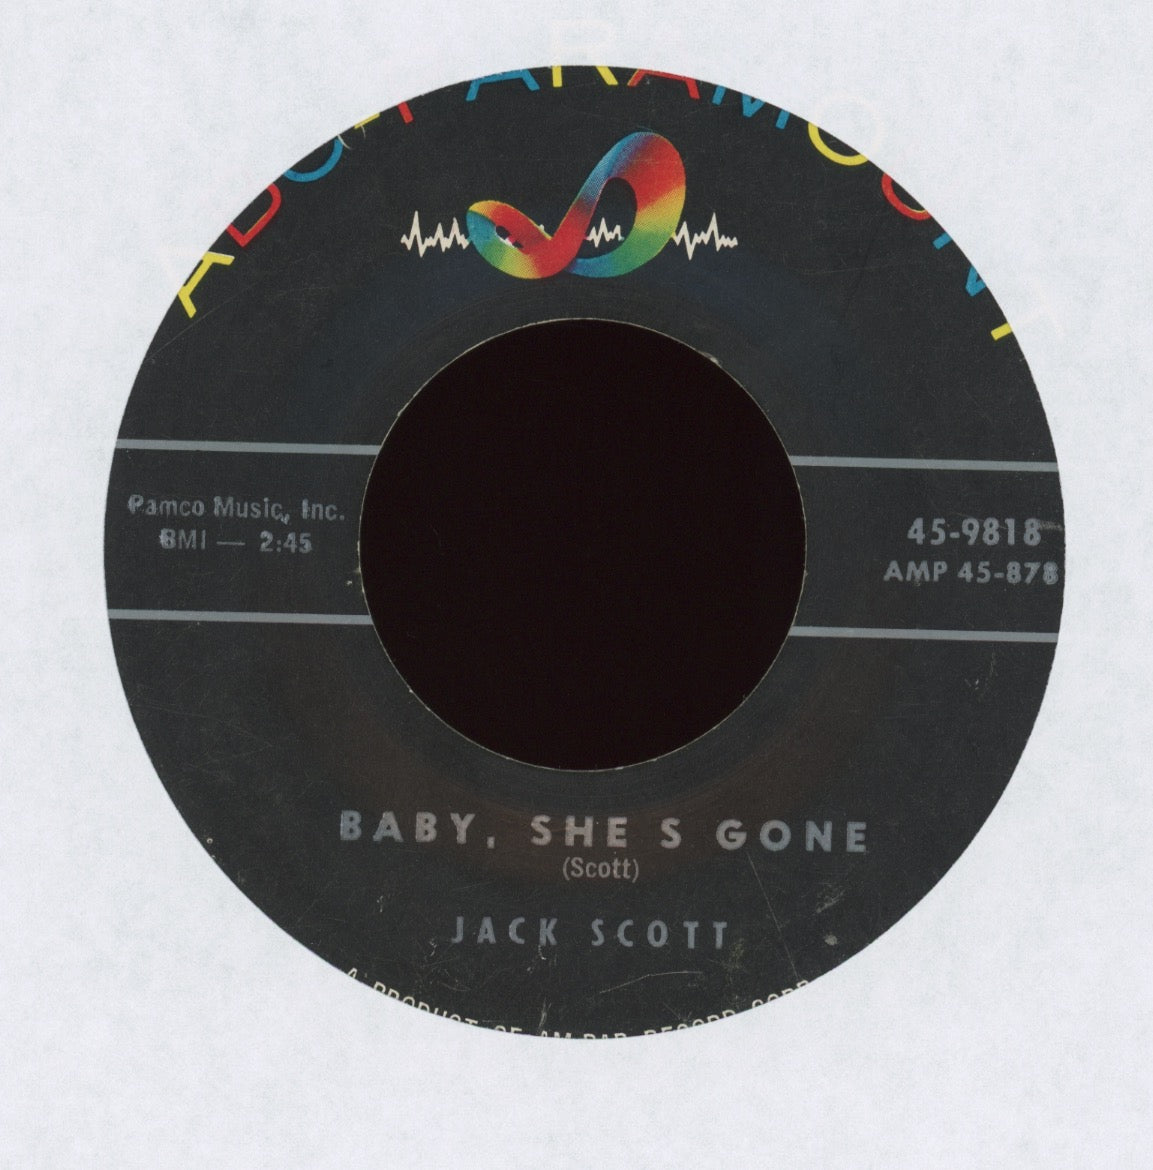 Jack Scott - Baby, She's Gone on ABC Paramount